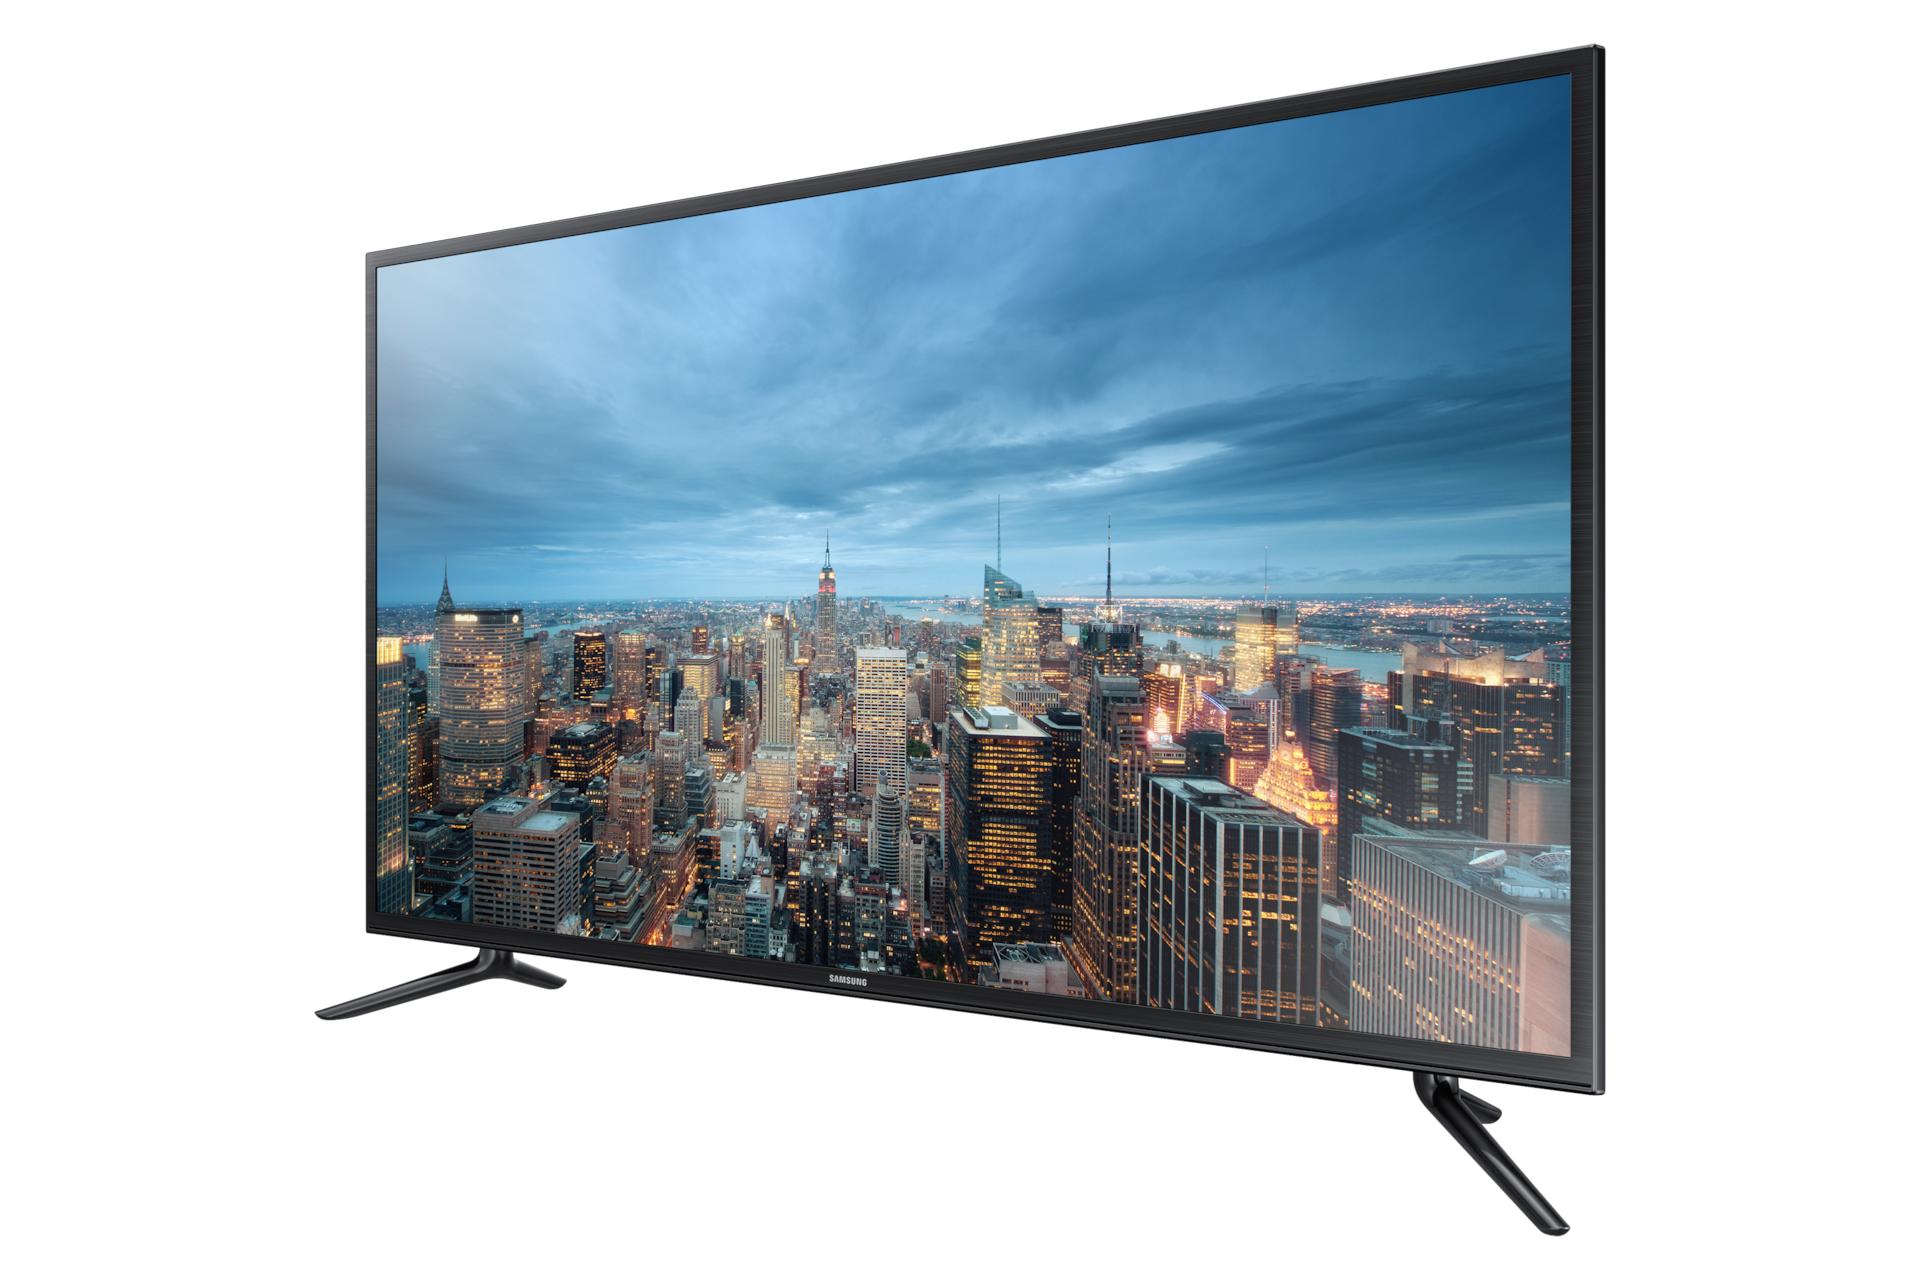 Телевизоры обзор цены. Samsung ue55ju6530u. Samsung ue43ju6000u. Samsung Smart TV 40. Телевизор Samsung ue48ju6000u 48" (2015).